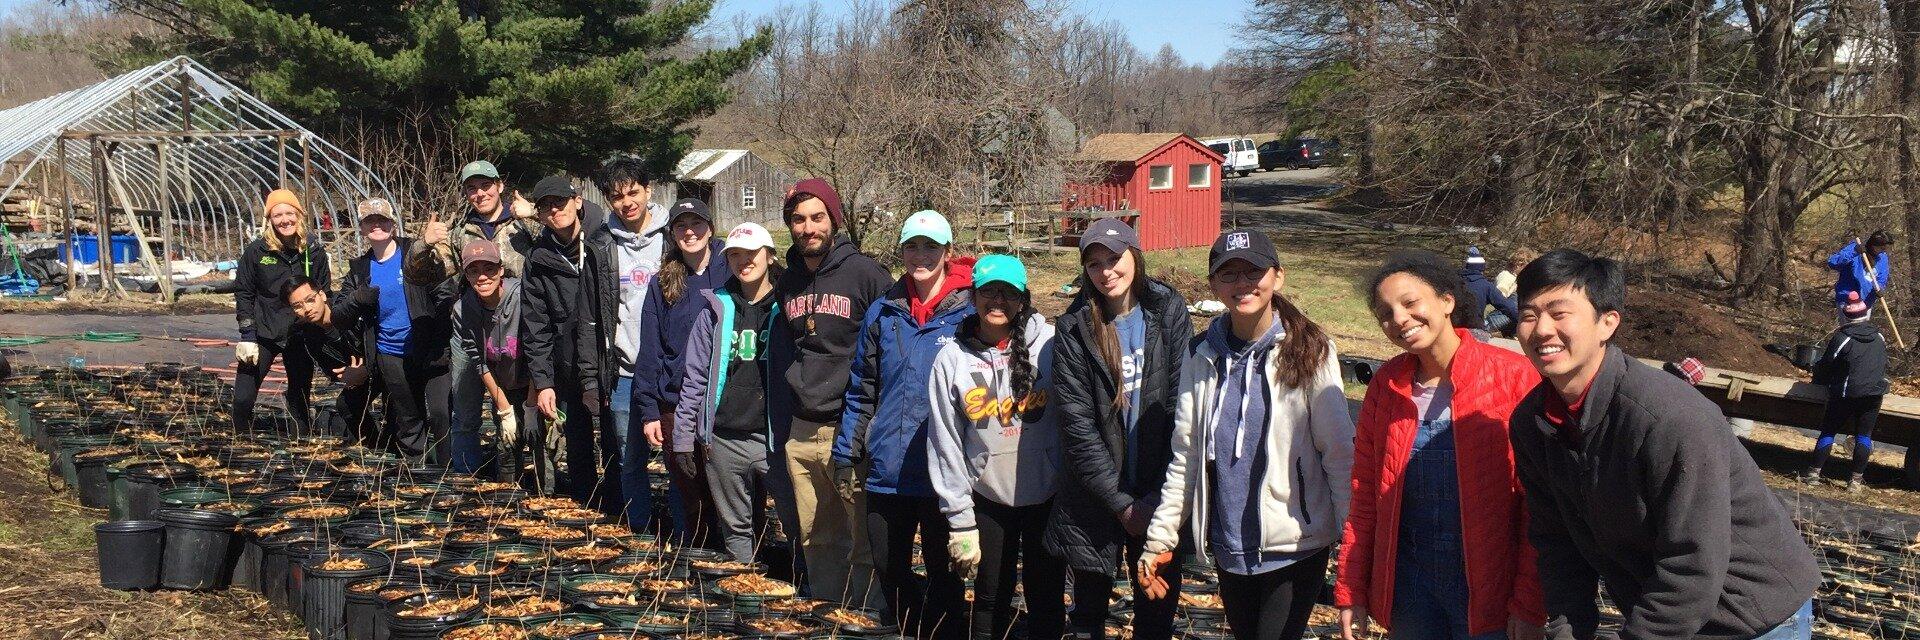 Volunteers outdoors planting trees